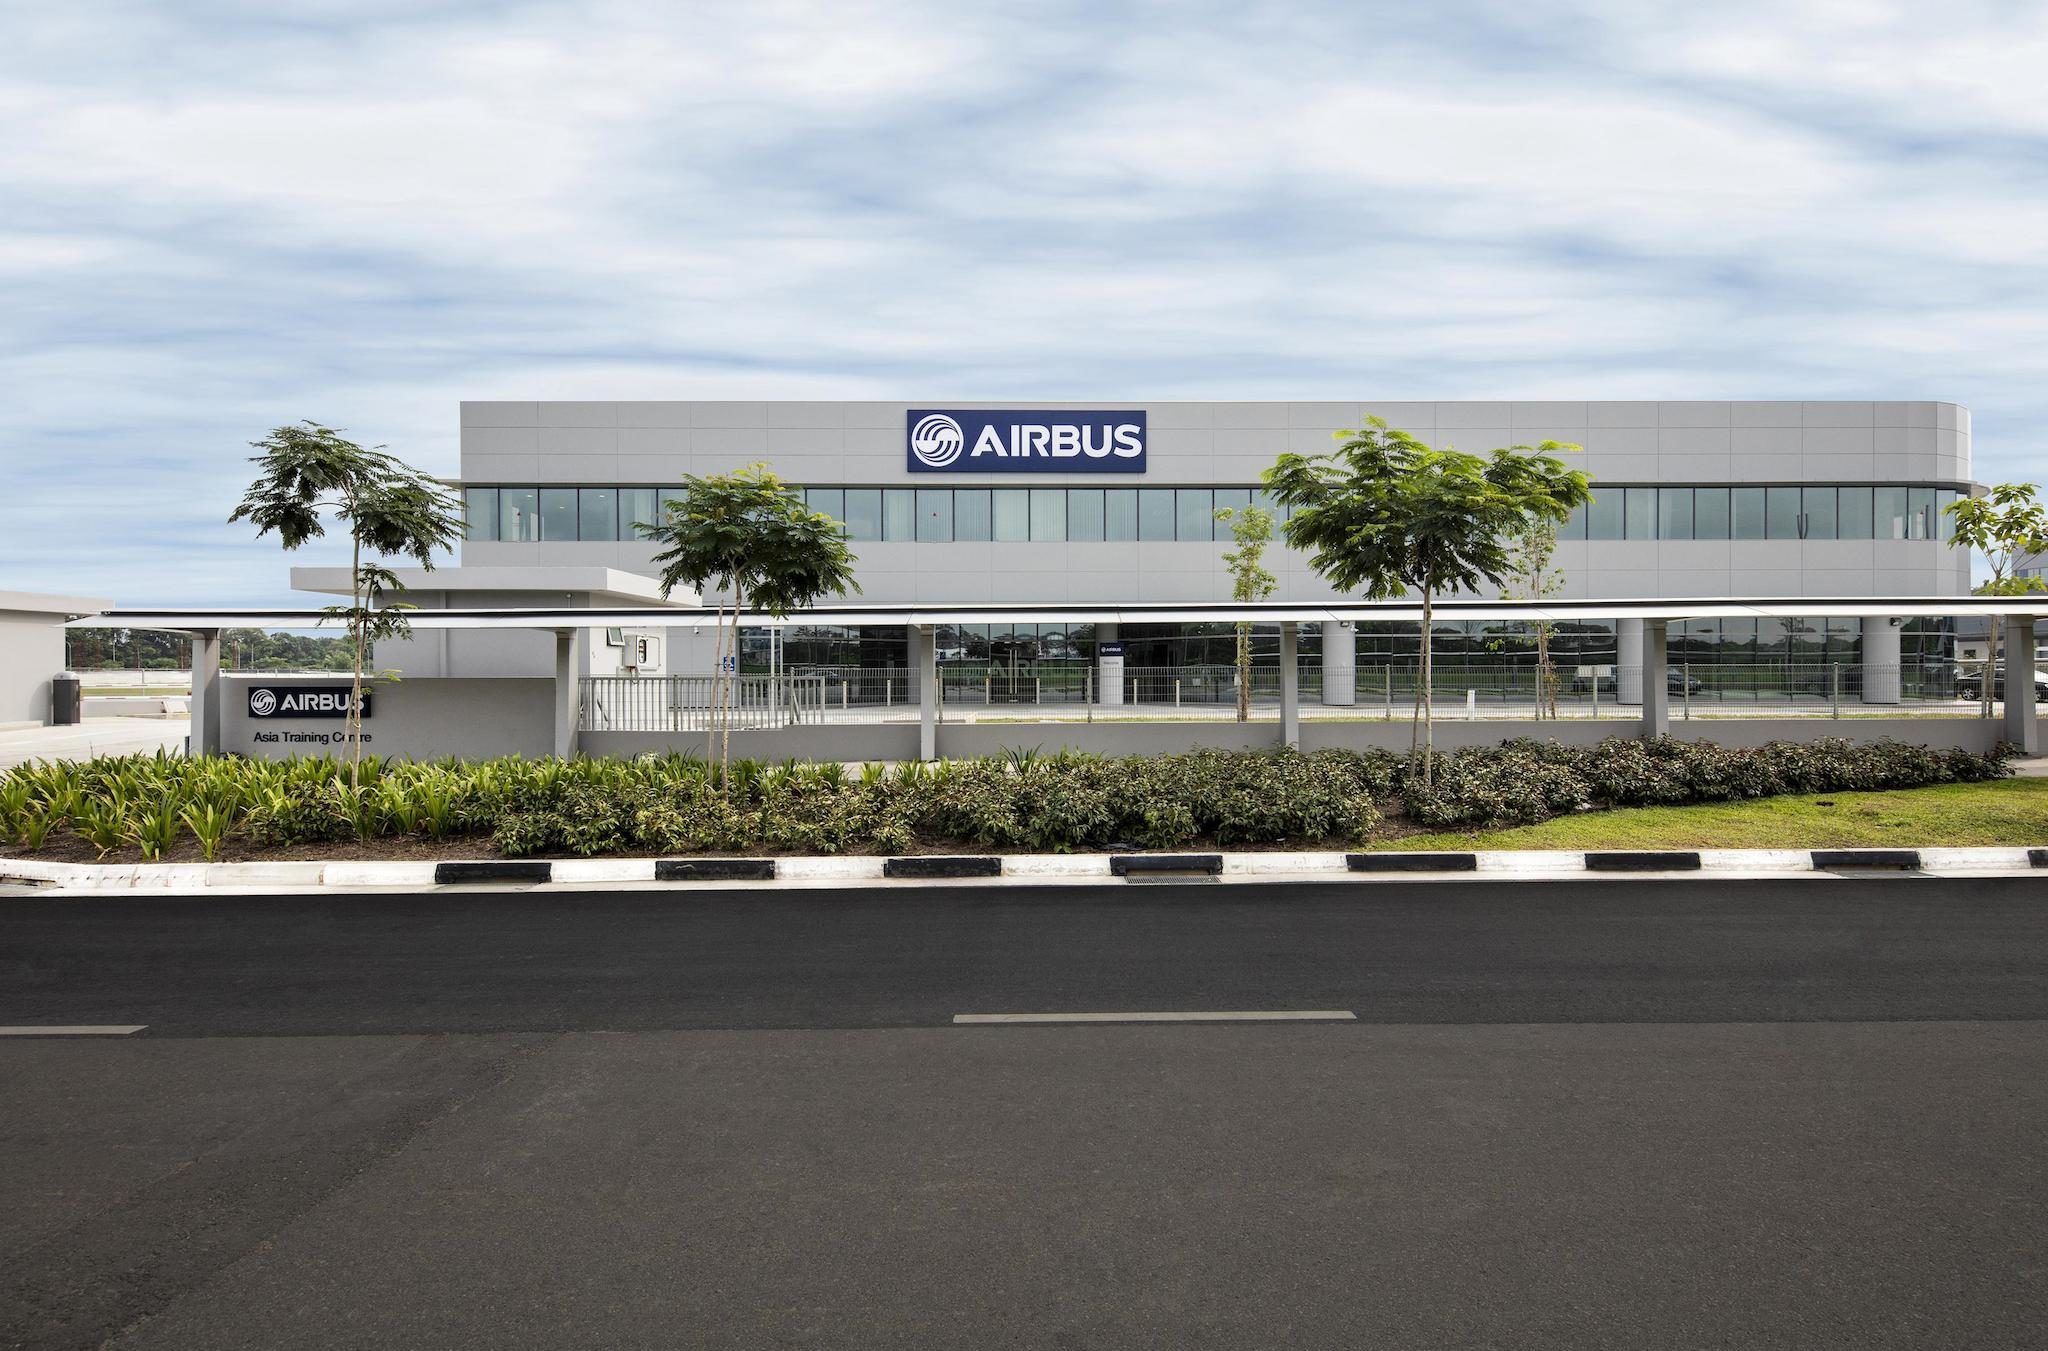 Airbus Asia Training Centre (AATC)